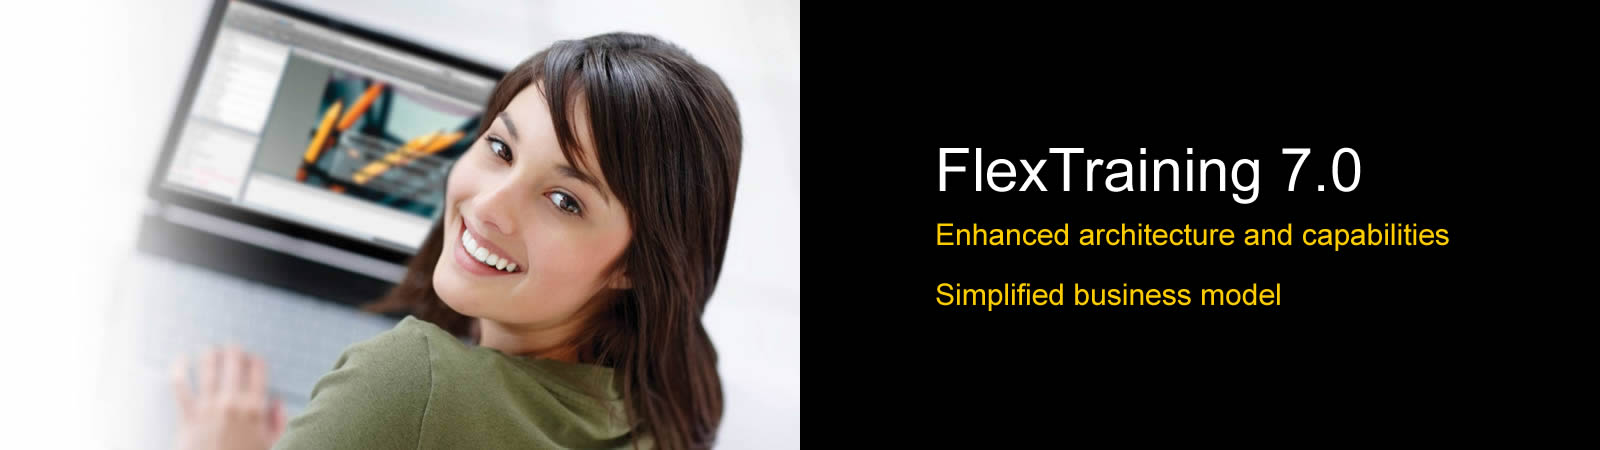 New release - FlexTraining 7.0